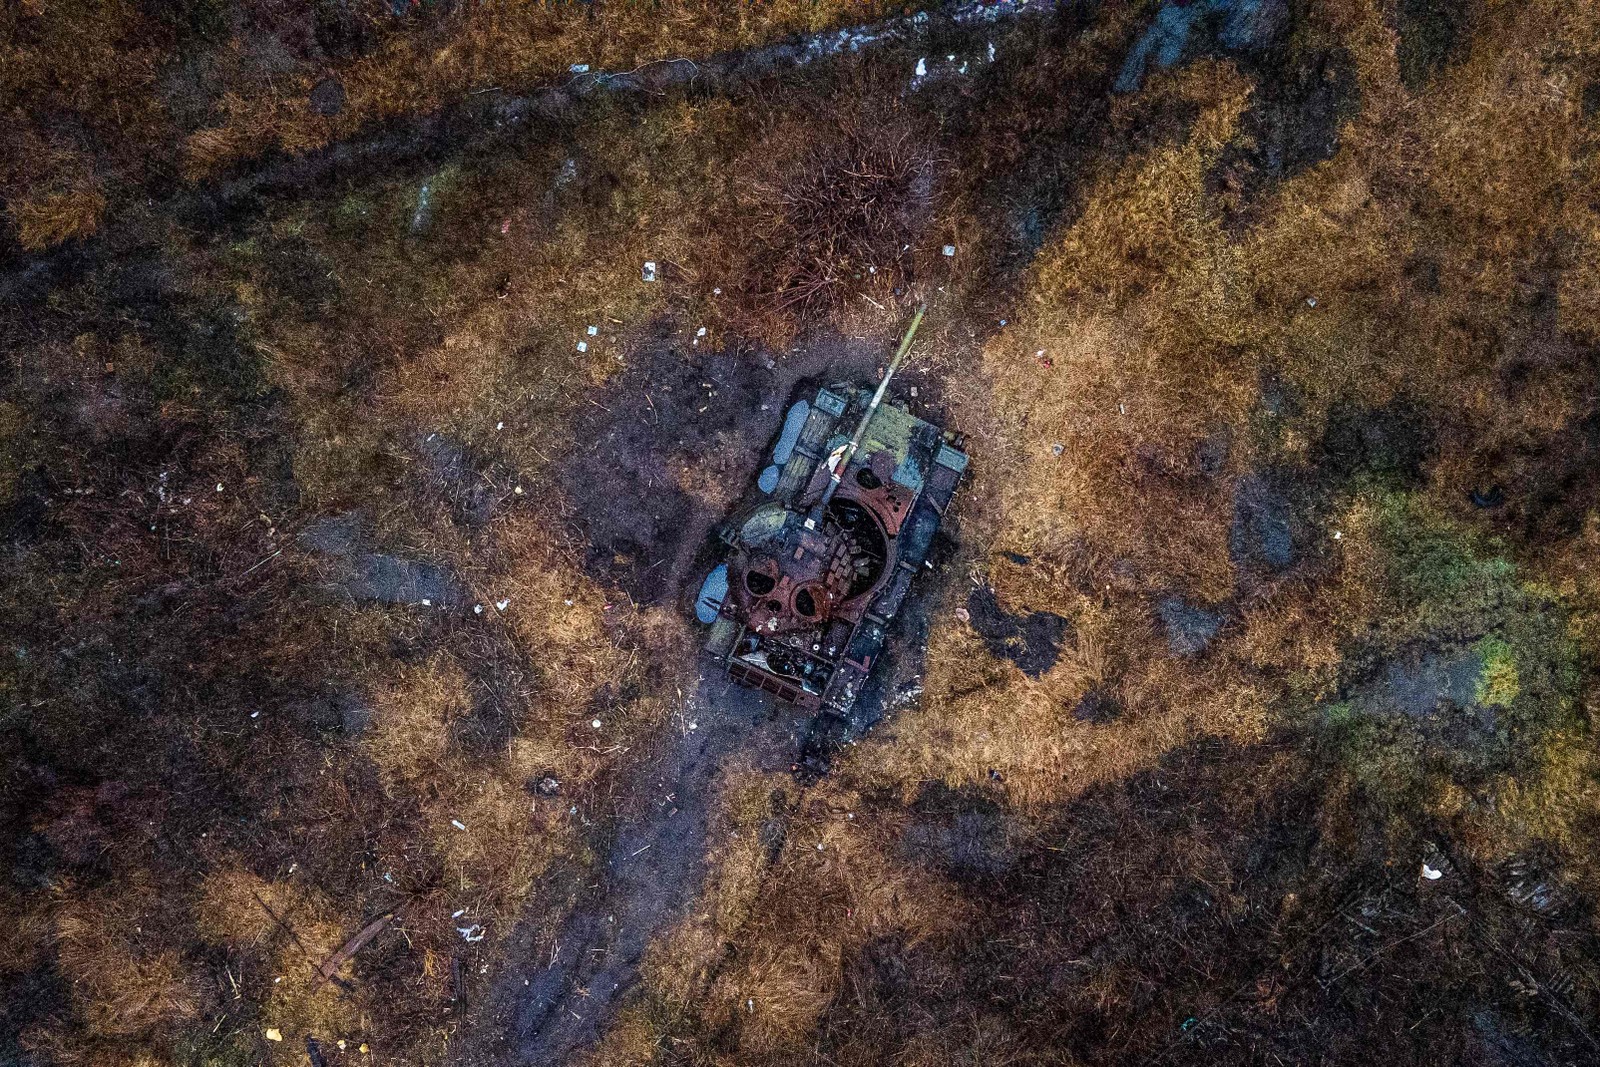 Tanque destruído em um campo na vila de Kamenka, região de Kharkiv. Aumenta a pressão por um cessar-fogo depois de 1 ano de guerra na Ucrânia — Foto: IHOR TKACHOV/AFP